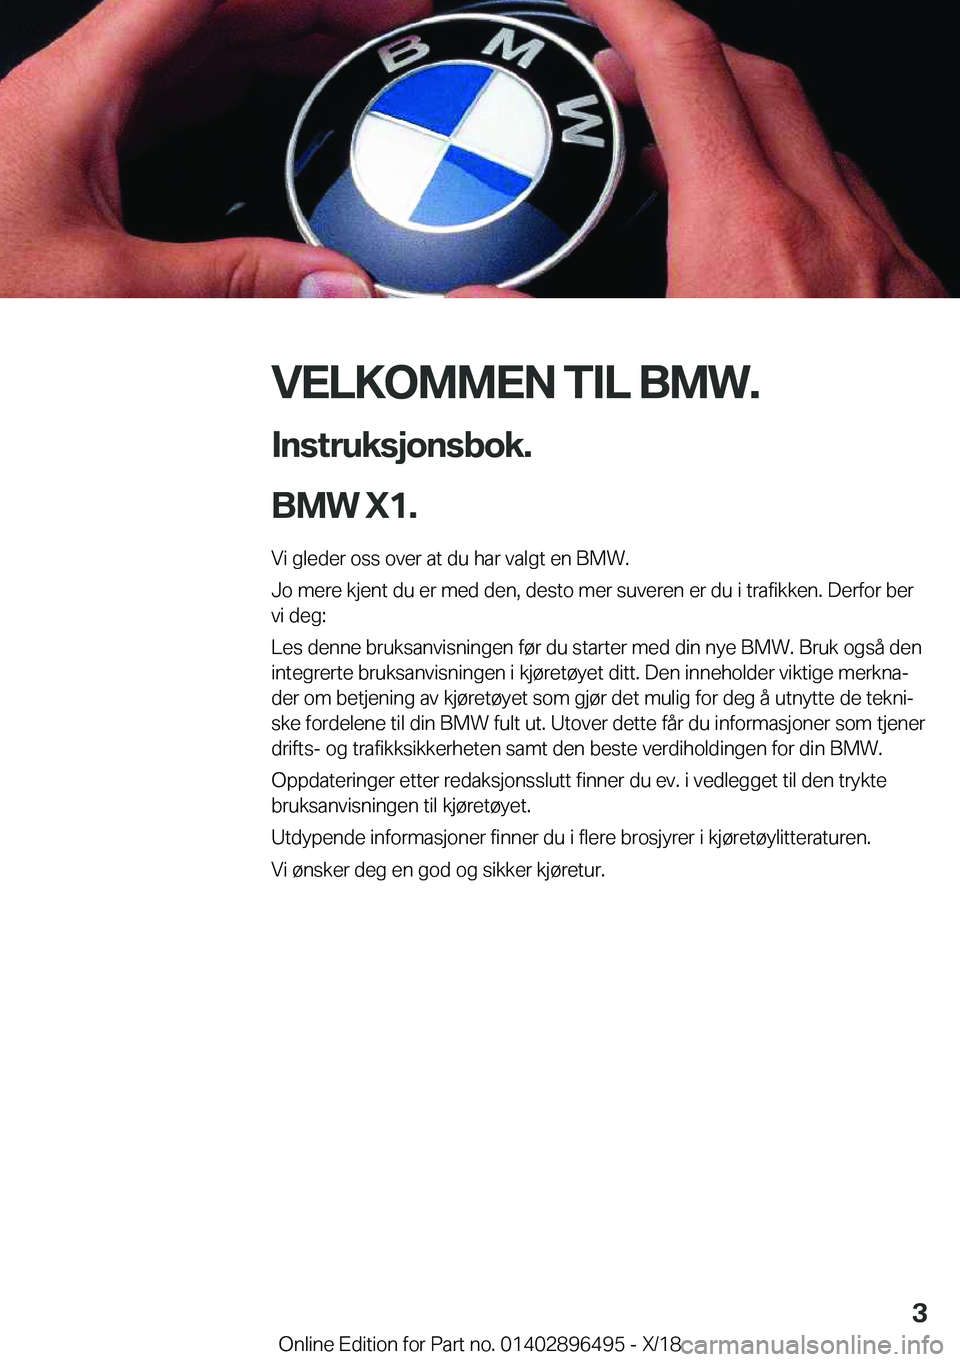 BMW X1 2019  InstruksjonsbØker (in Norwegian) �V�E�L�K�O�M�M�E�N��T�I�L��B�M�W�.�I�n�s�t�r�u�k�s�j�o�n�s�b�o�k�.
�B�M�W��X�1�.
�V�i��g�l�e�d�e�r��o�s�s��o�v�e�r��a�t��d�u��h�a�r��v�a�l�g�t��e�n��B�M�W�.
�J�o��m�e�r�e��k�j�e�n�t��d�